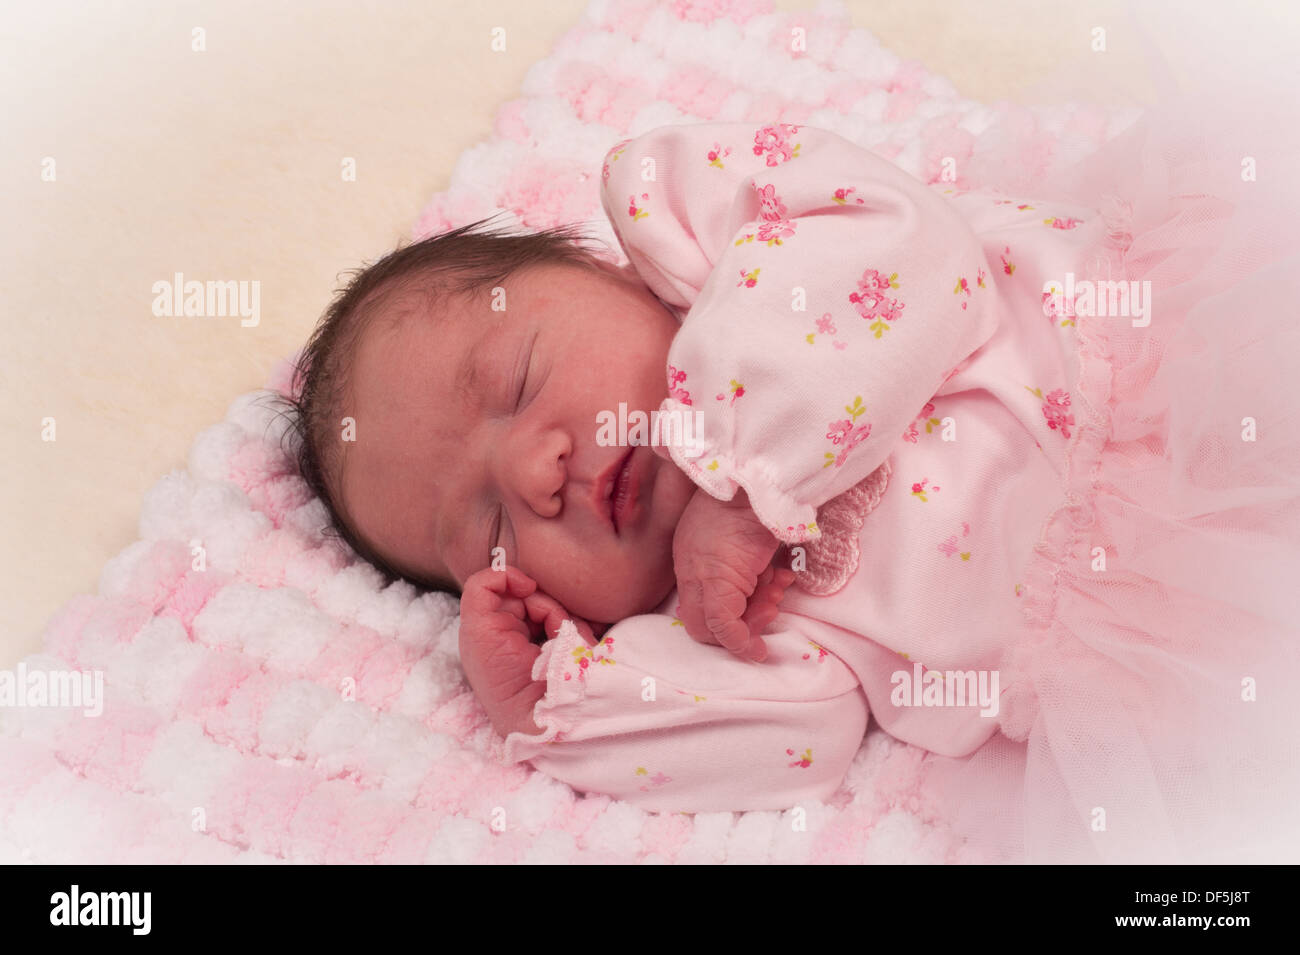 El Recién Nacido Niña En Ropa De Color Rosa Sobre Fondo Blanco Fotos,  retratos, imágenes y fotografía de archivo libres de derecho. Image 3228150